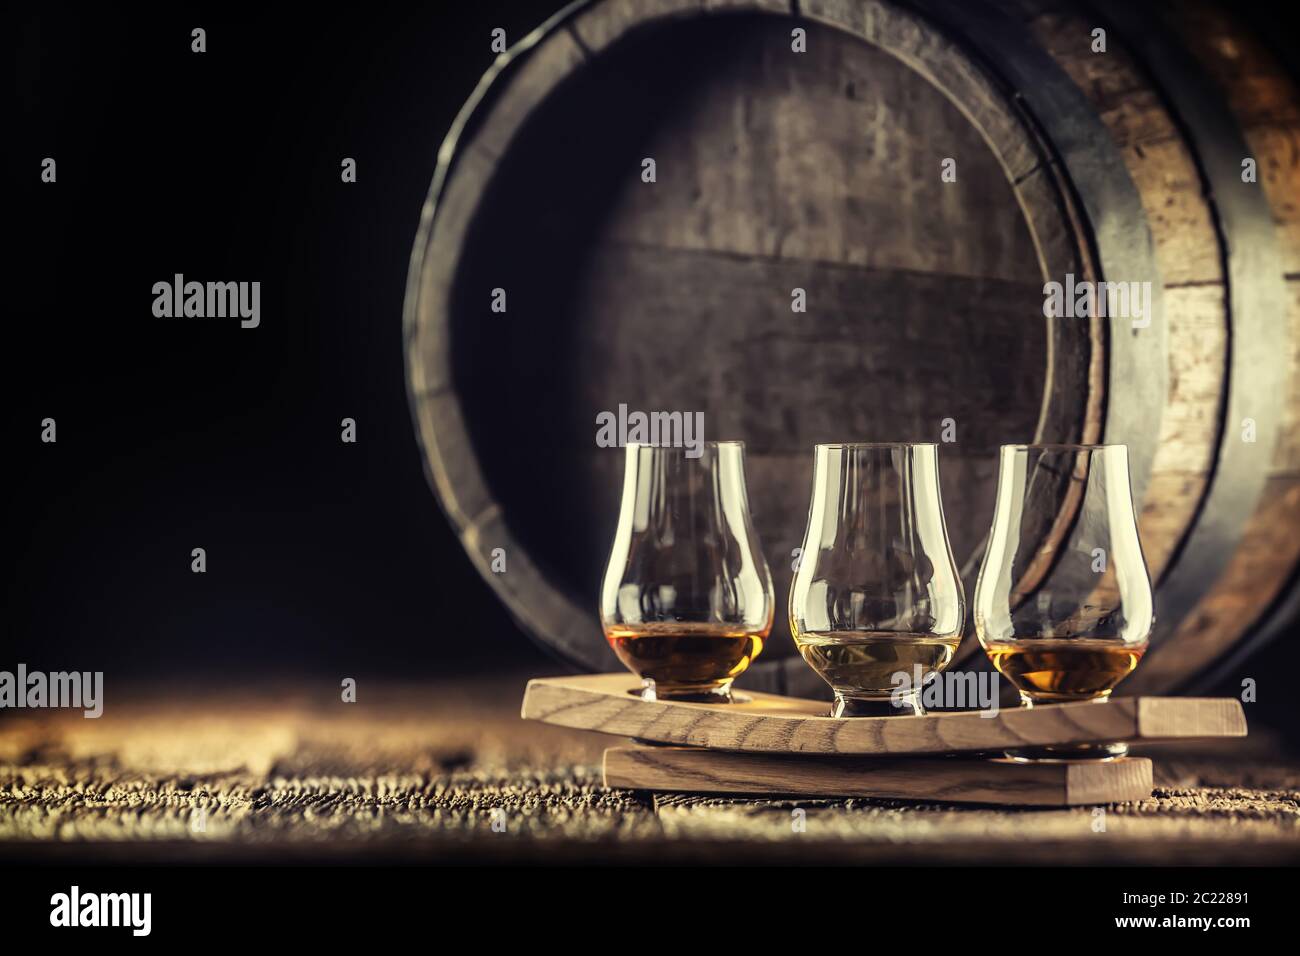 Bicchieri per degustazione di whisky Glencairn su una porzione di legno, con un barile di whisky su sfondo scuro Foto Stock